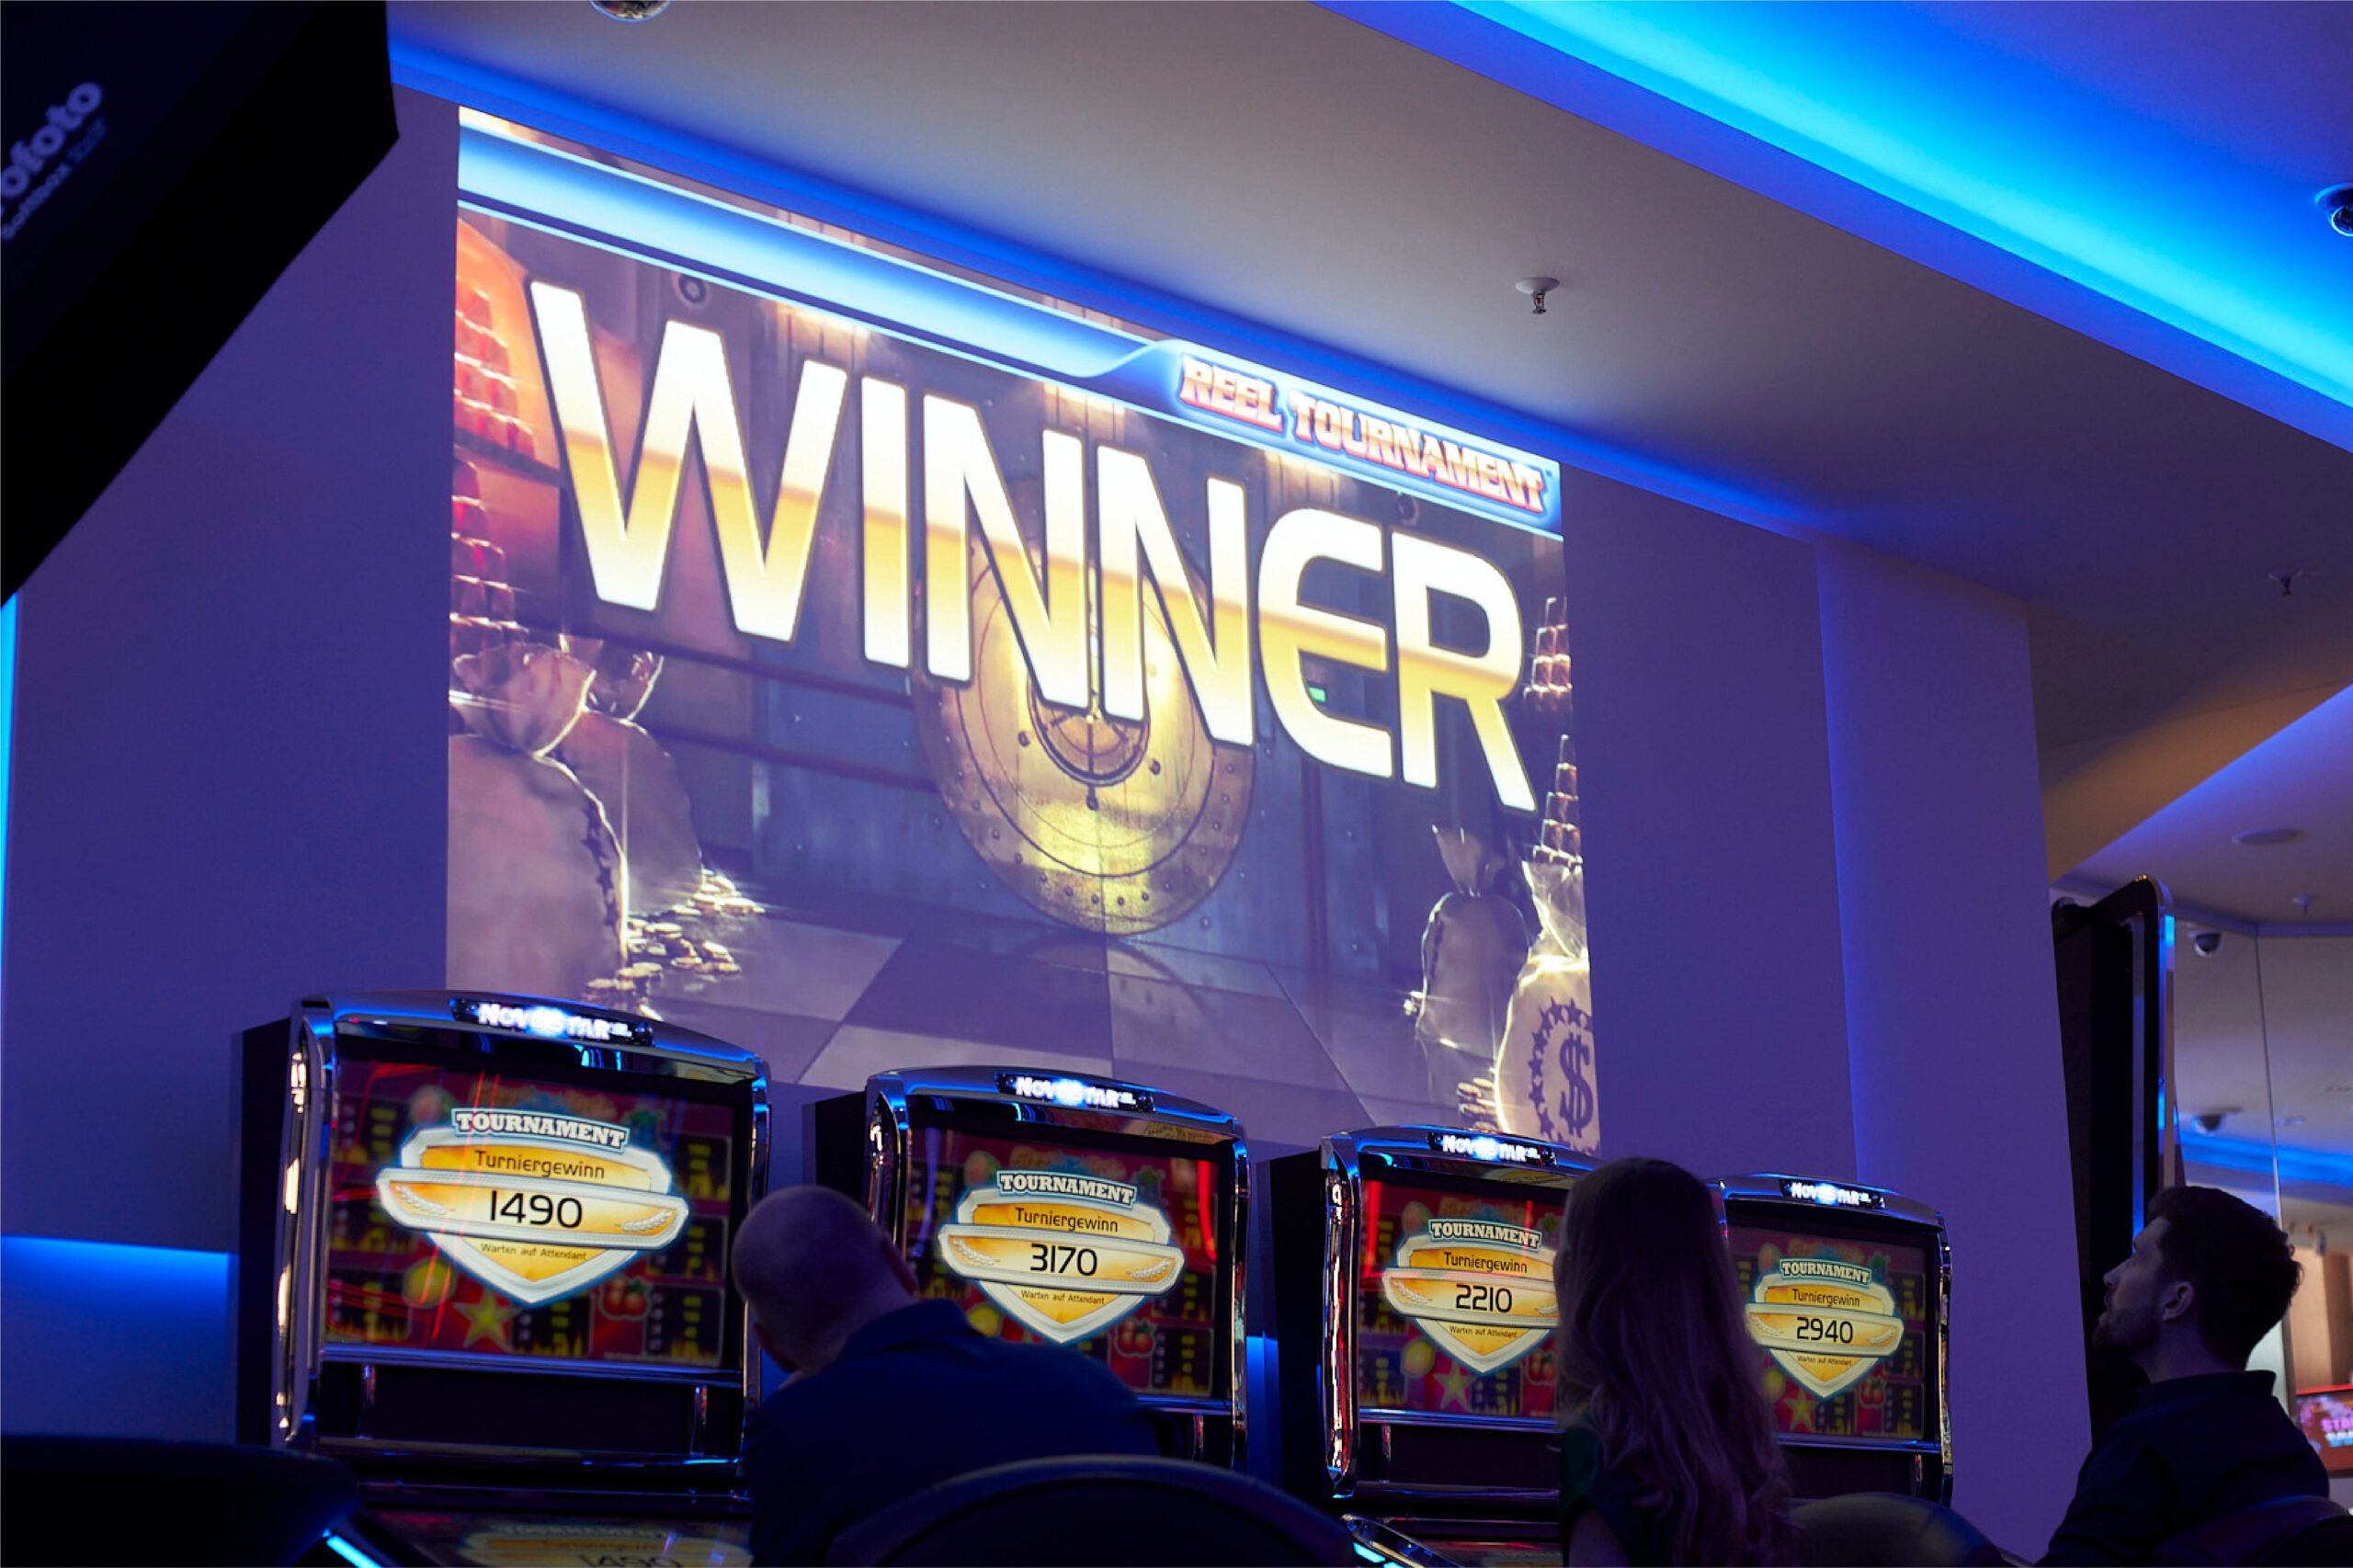 Winner-Anzeige über Spielautomaten von drei Spielern